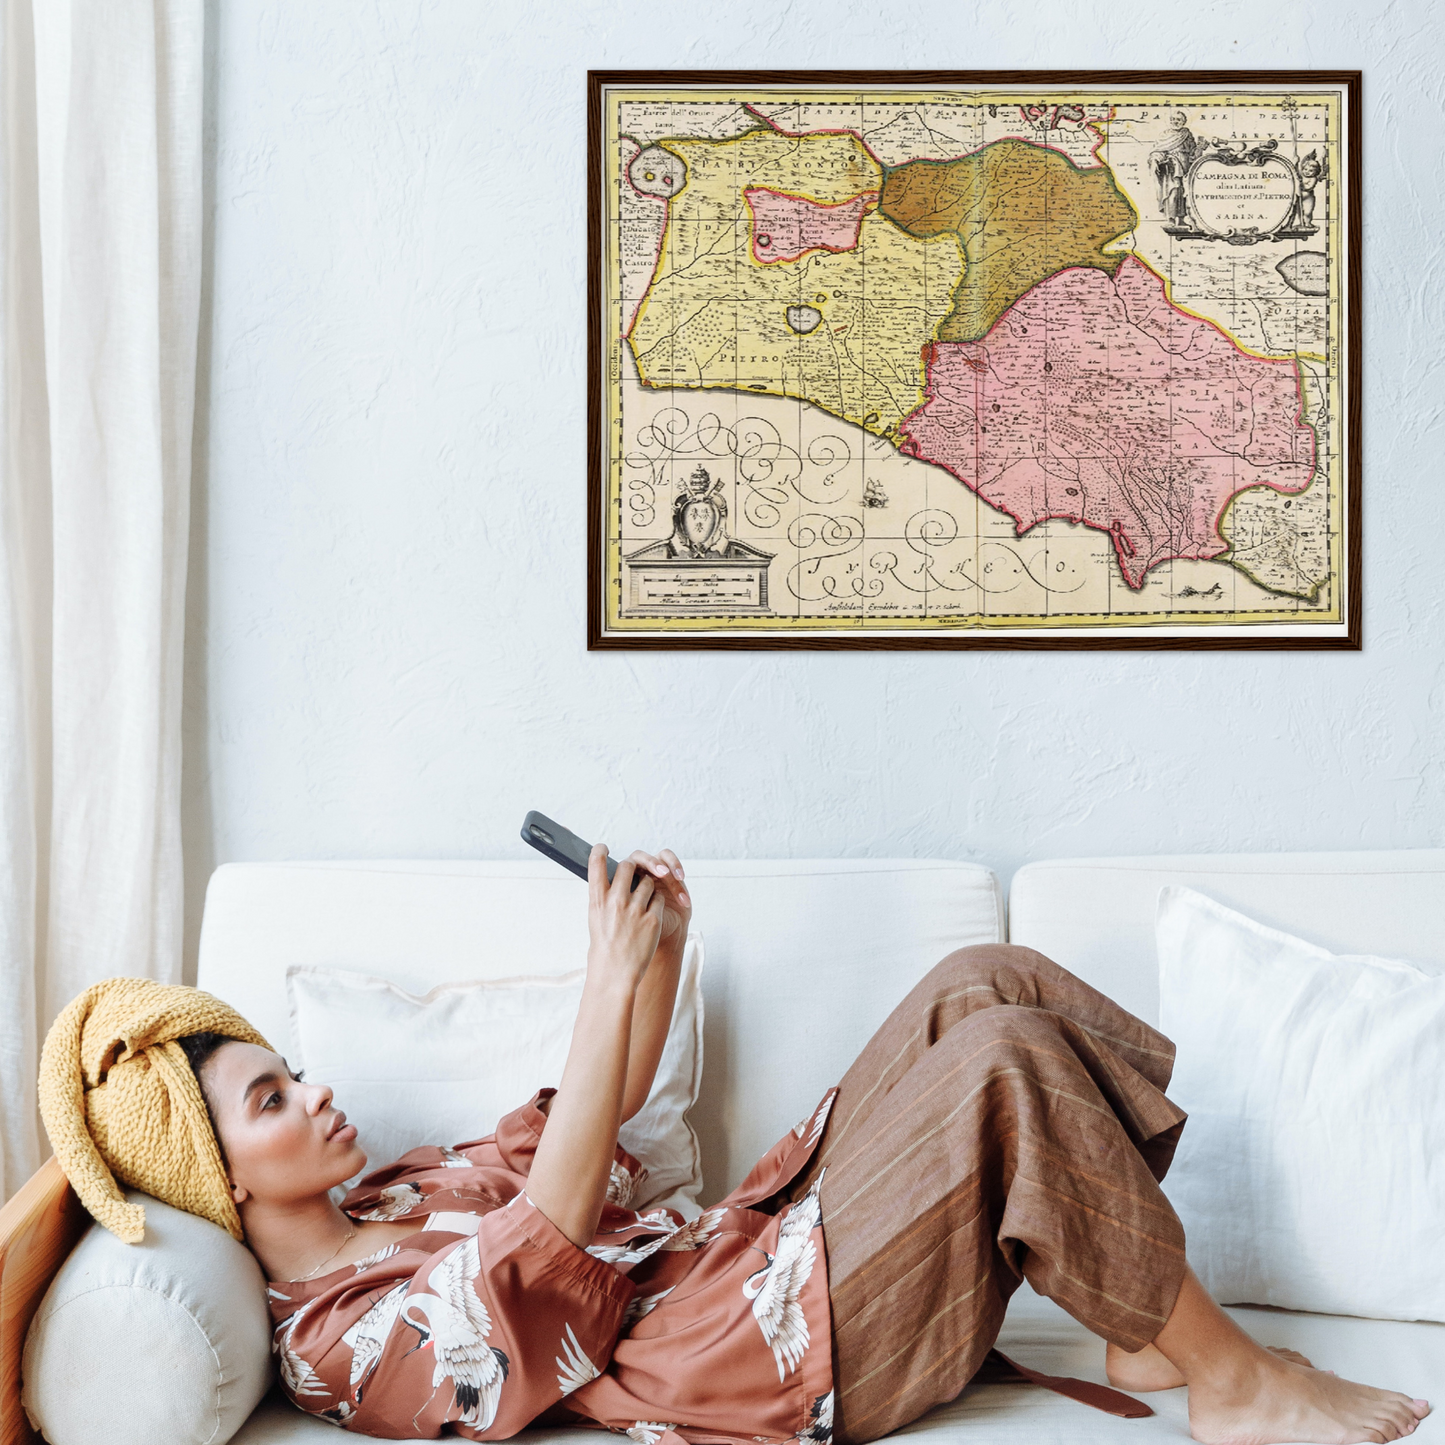 Historische Landkarte Latium um 1700